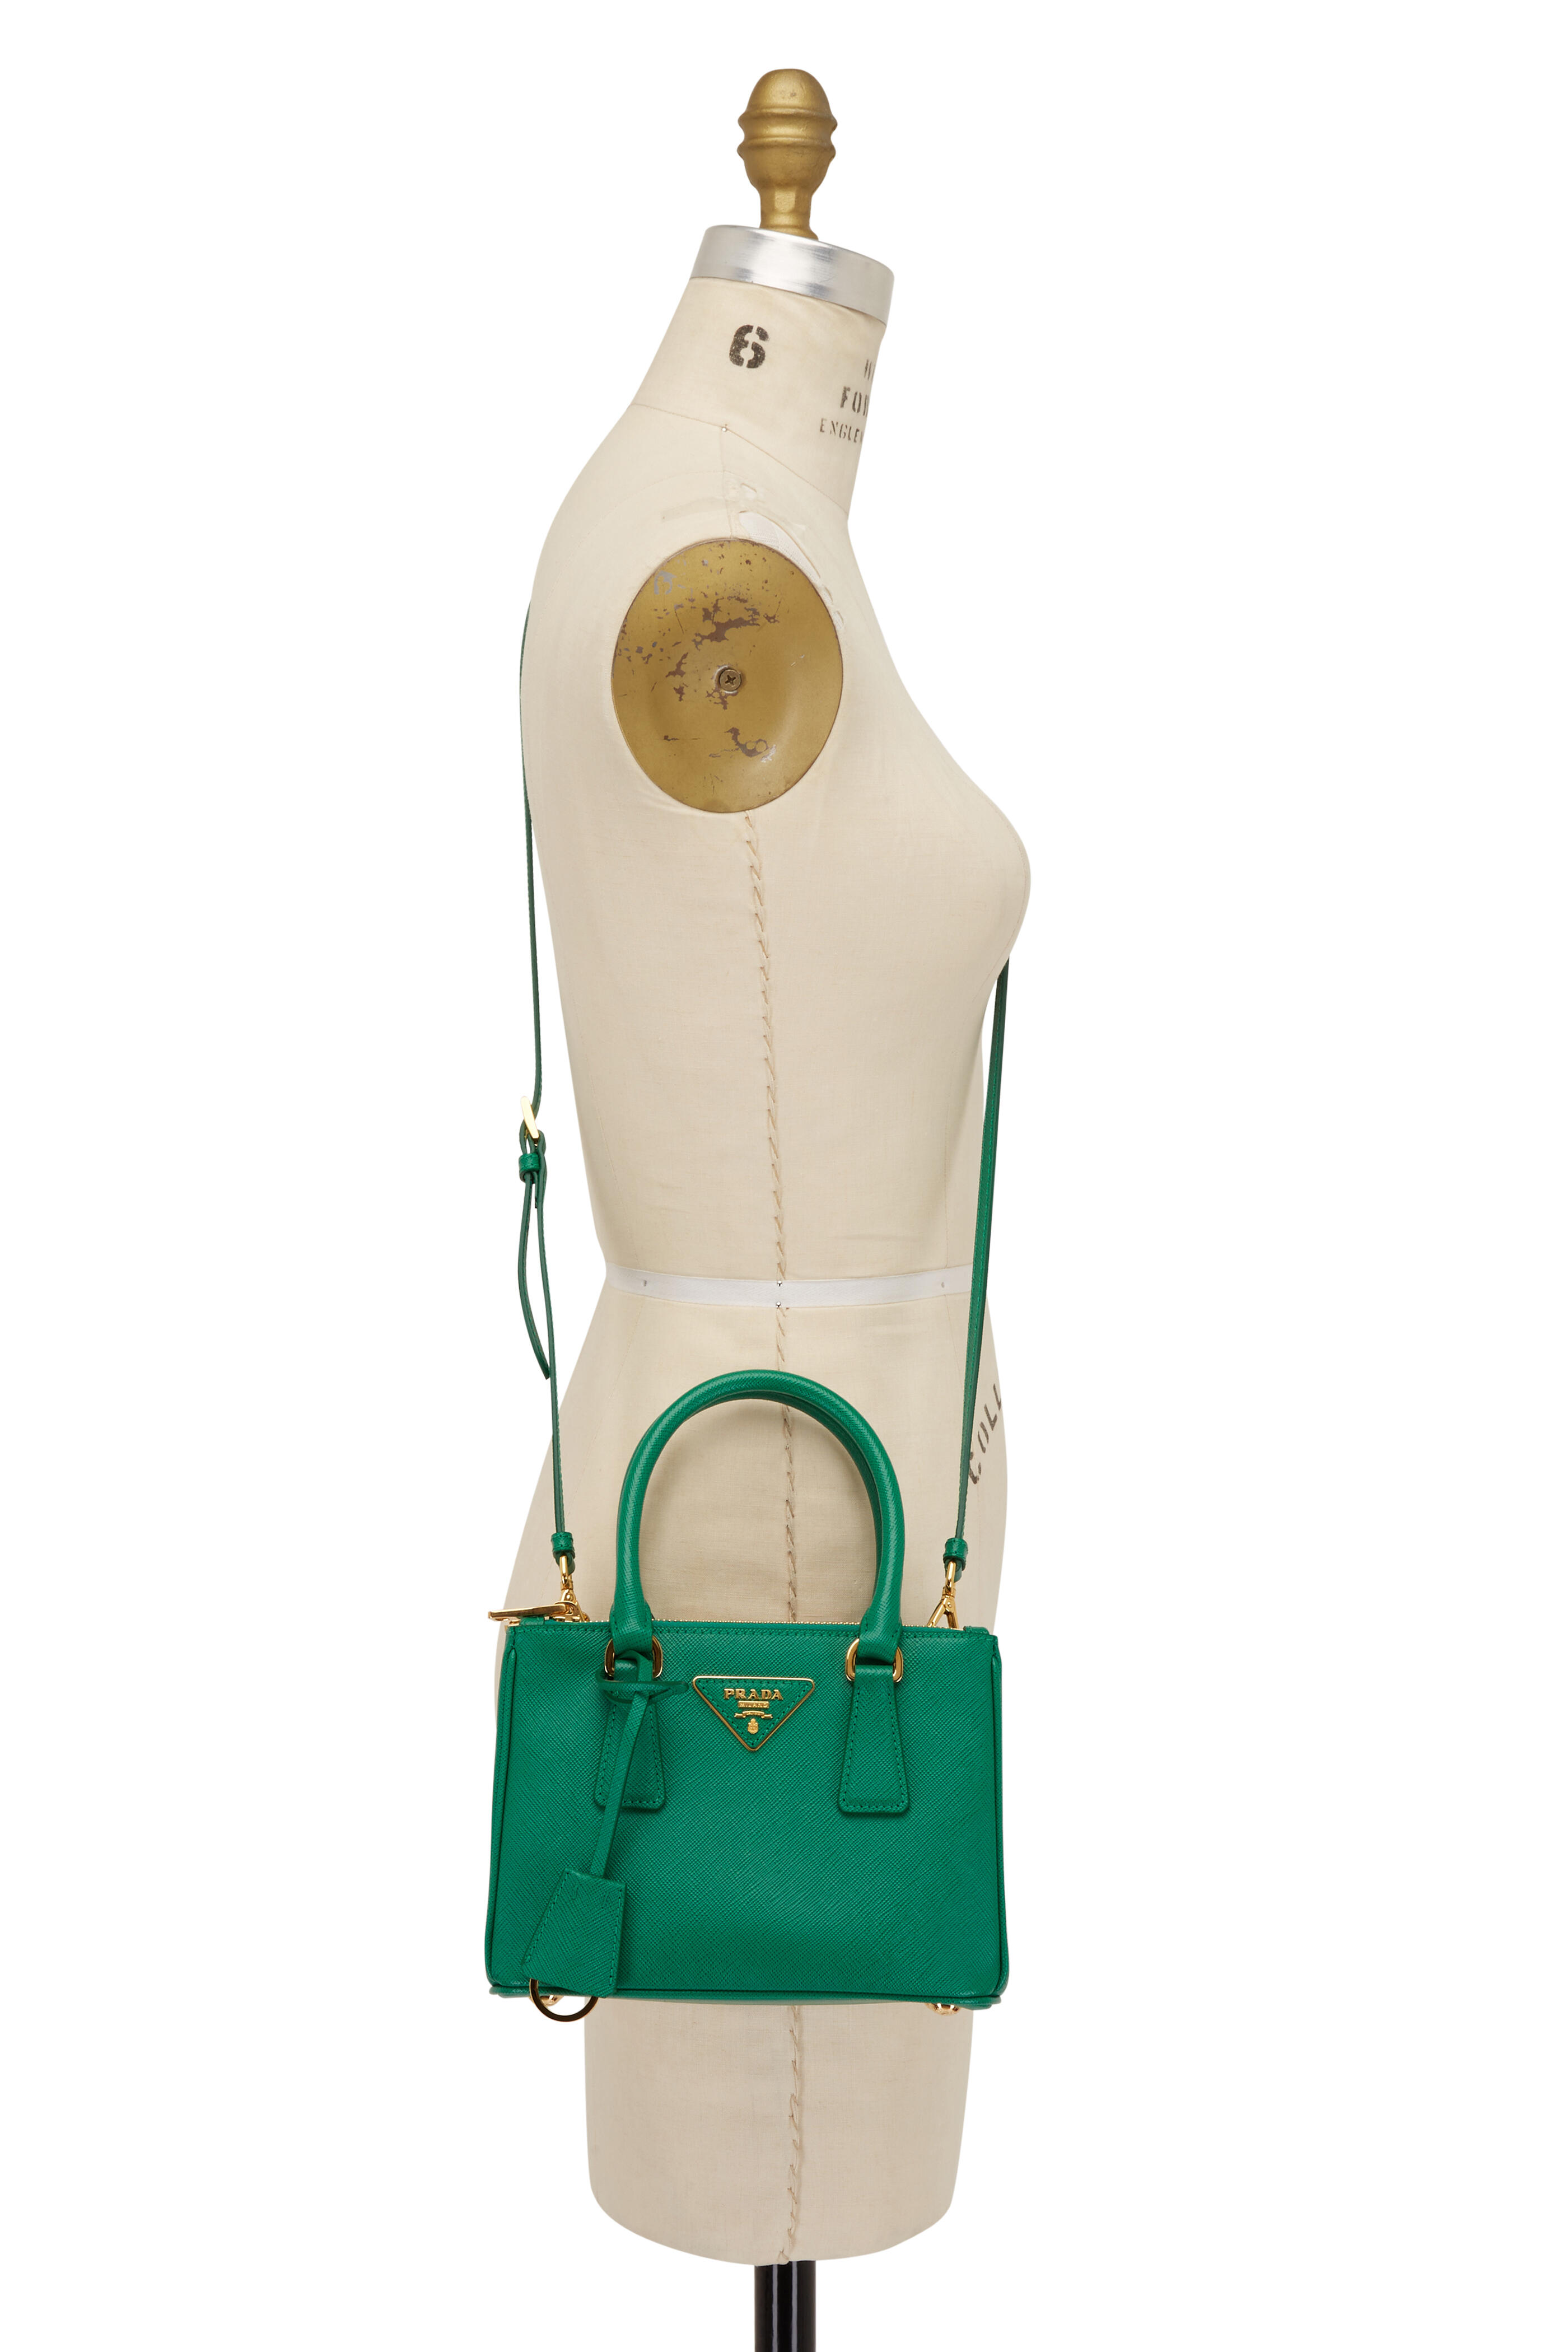 Prada Galleria Saffiano Leather Mini-bag in Green